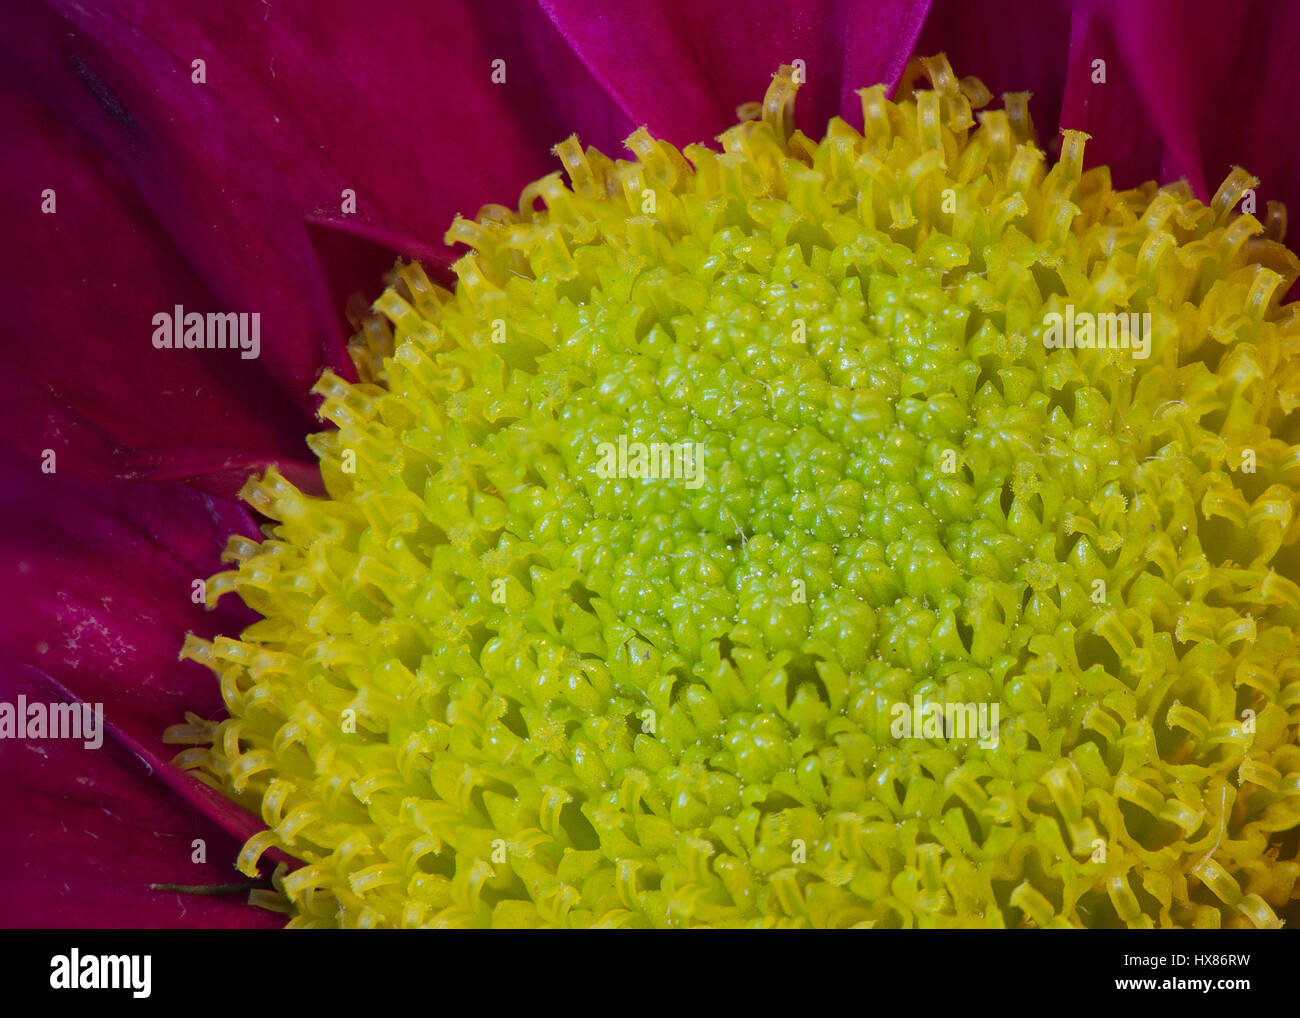 Macro photo of chrysanthemum center. Stock Photo